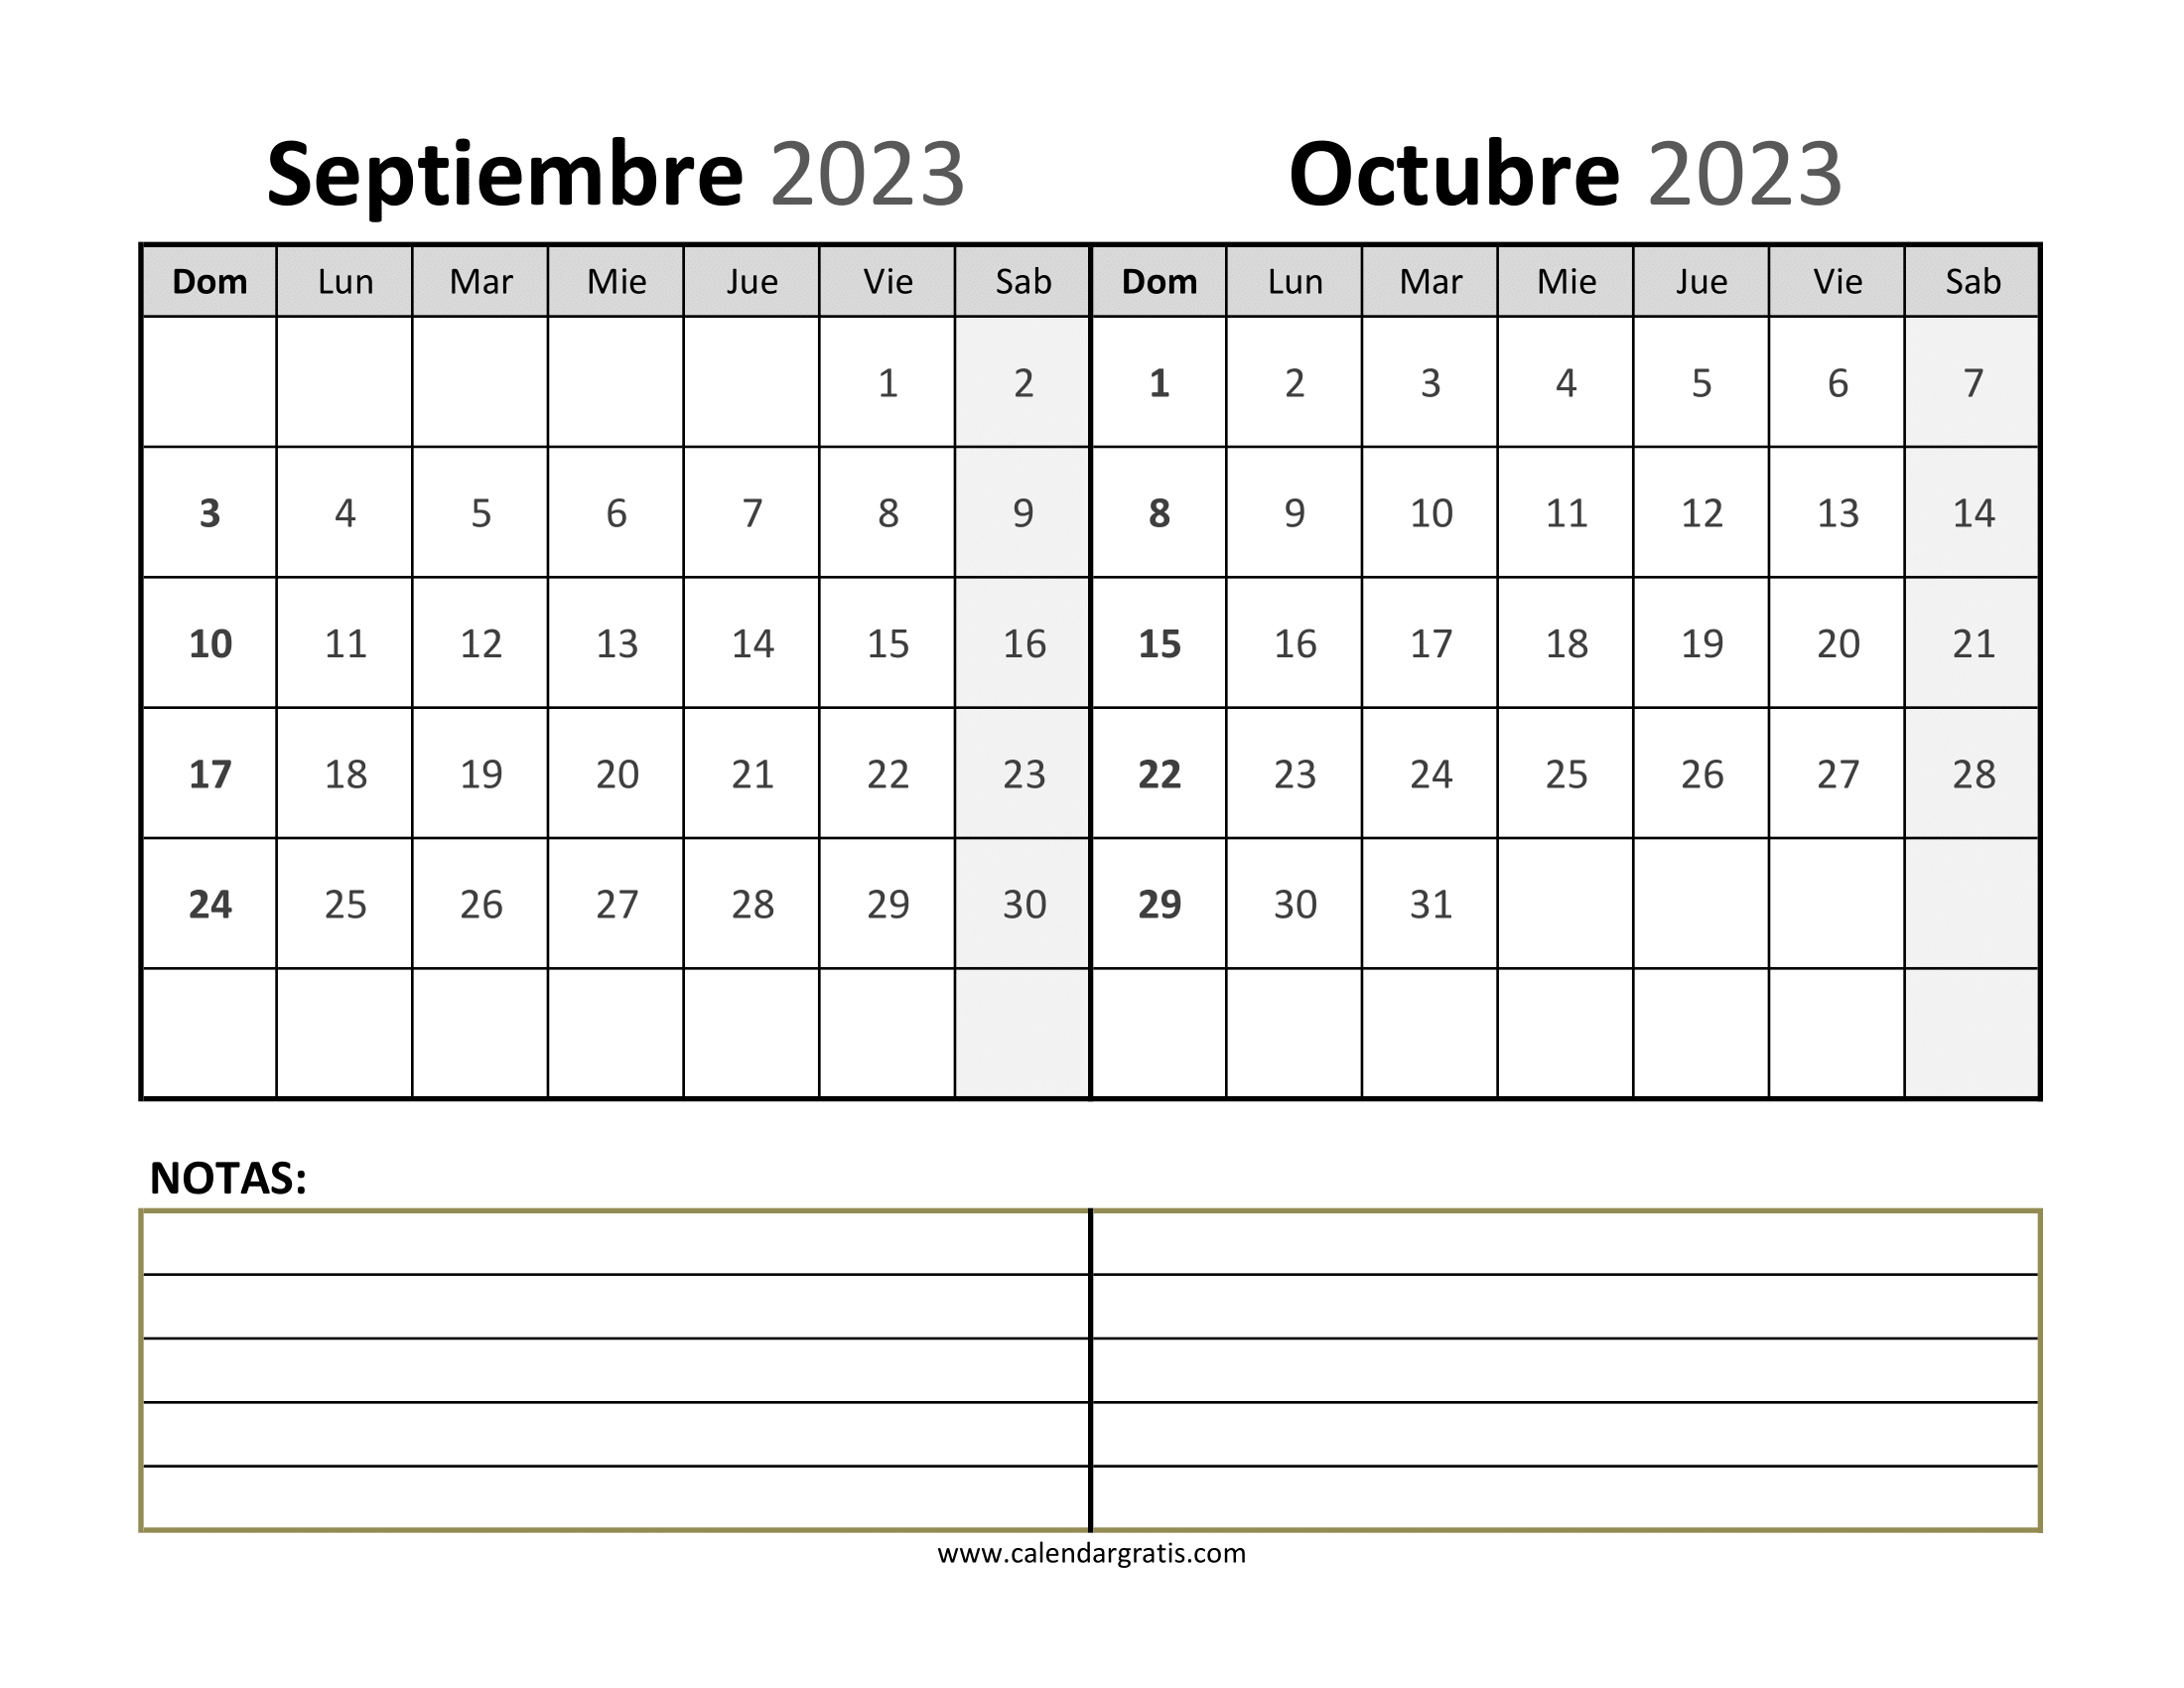 Calendario Septiembre y Octubre 2023 de pared que muestra los meses de  en detalle